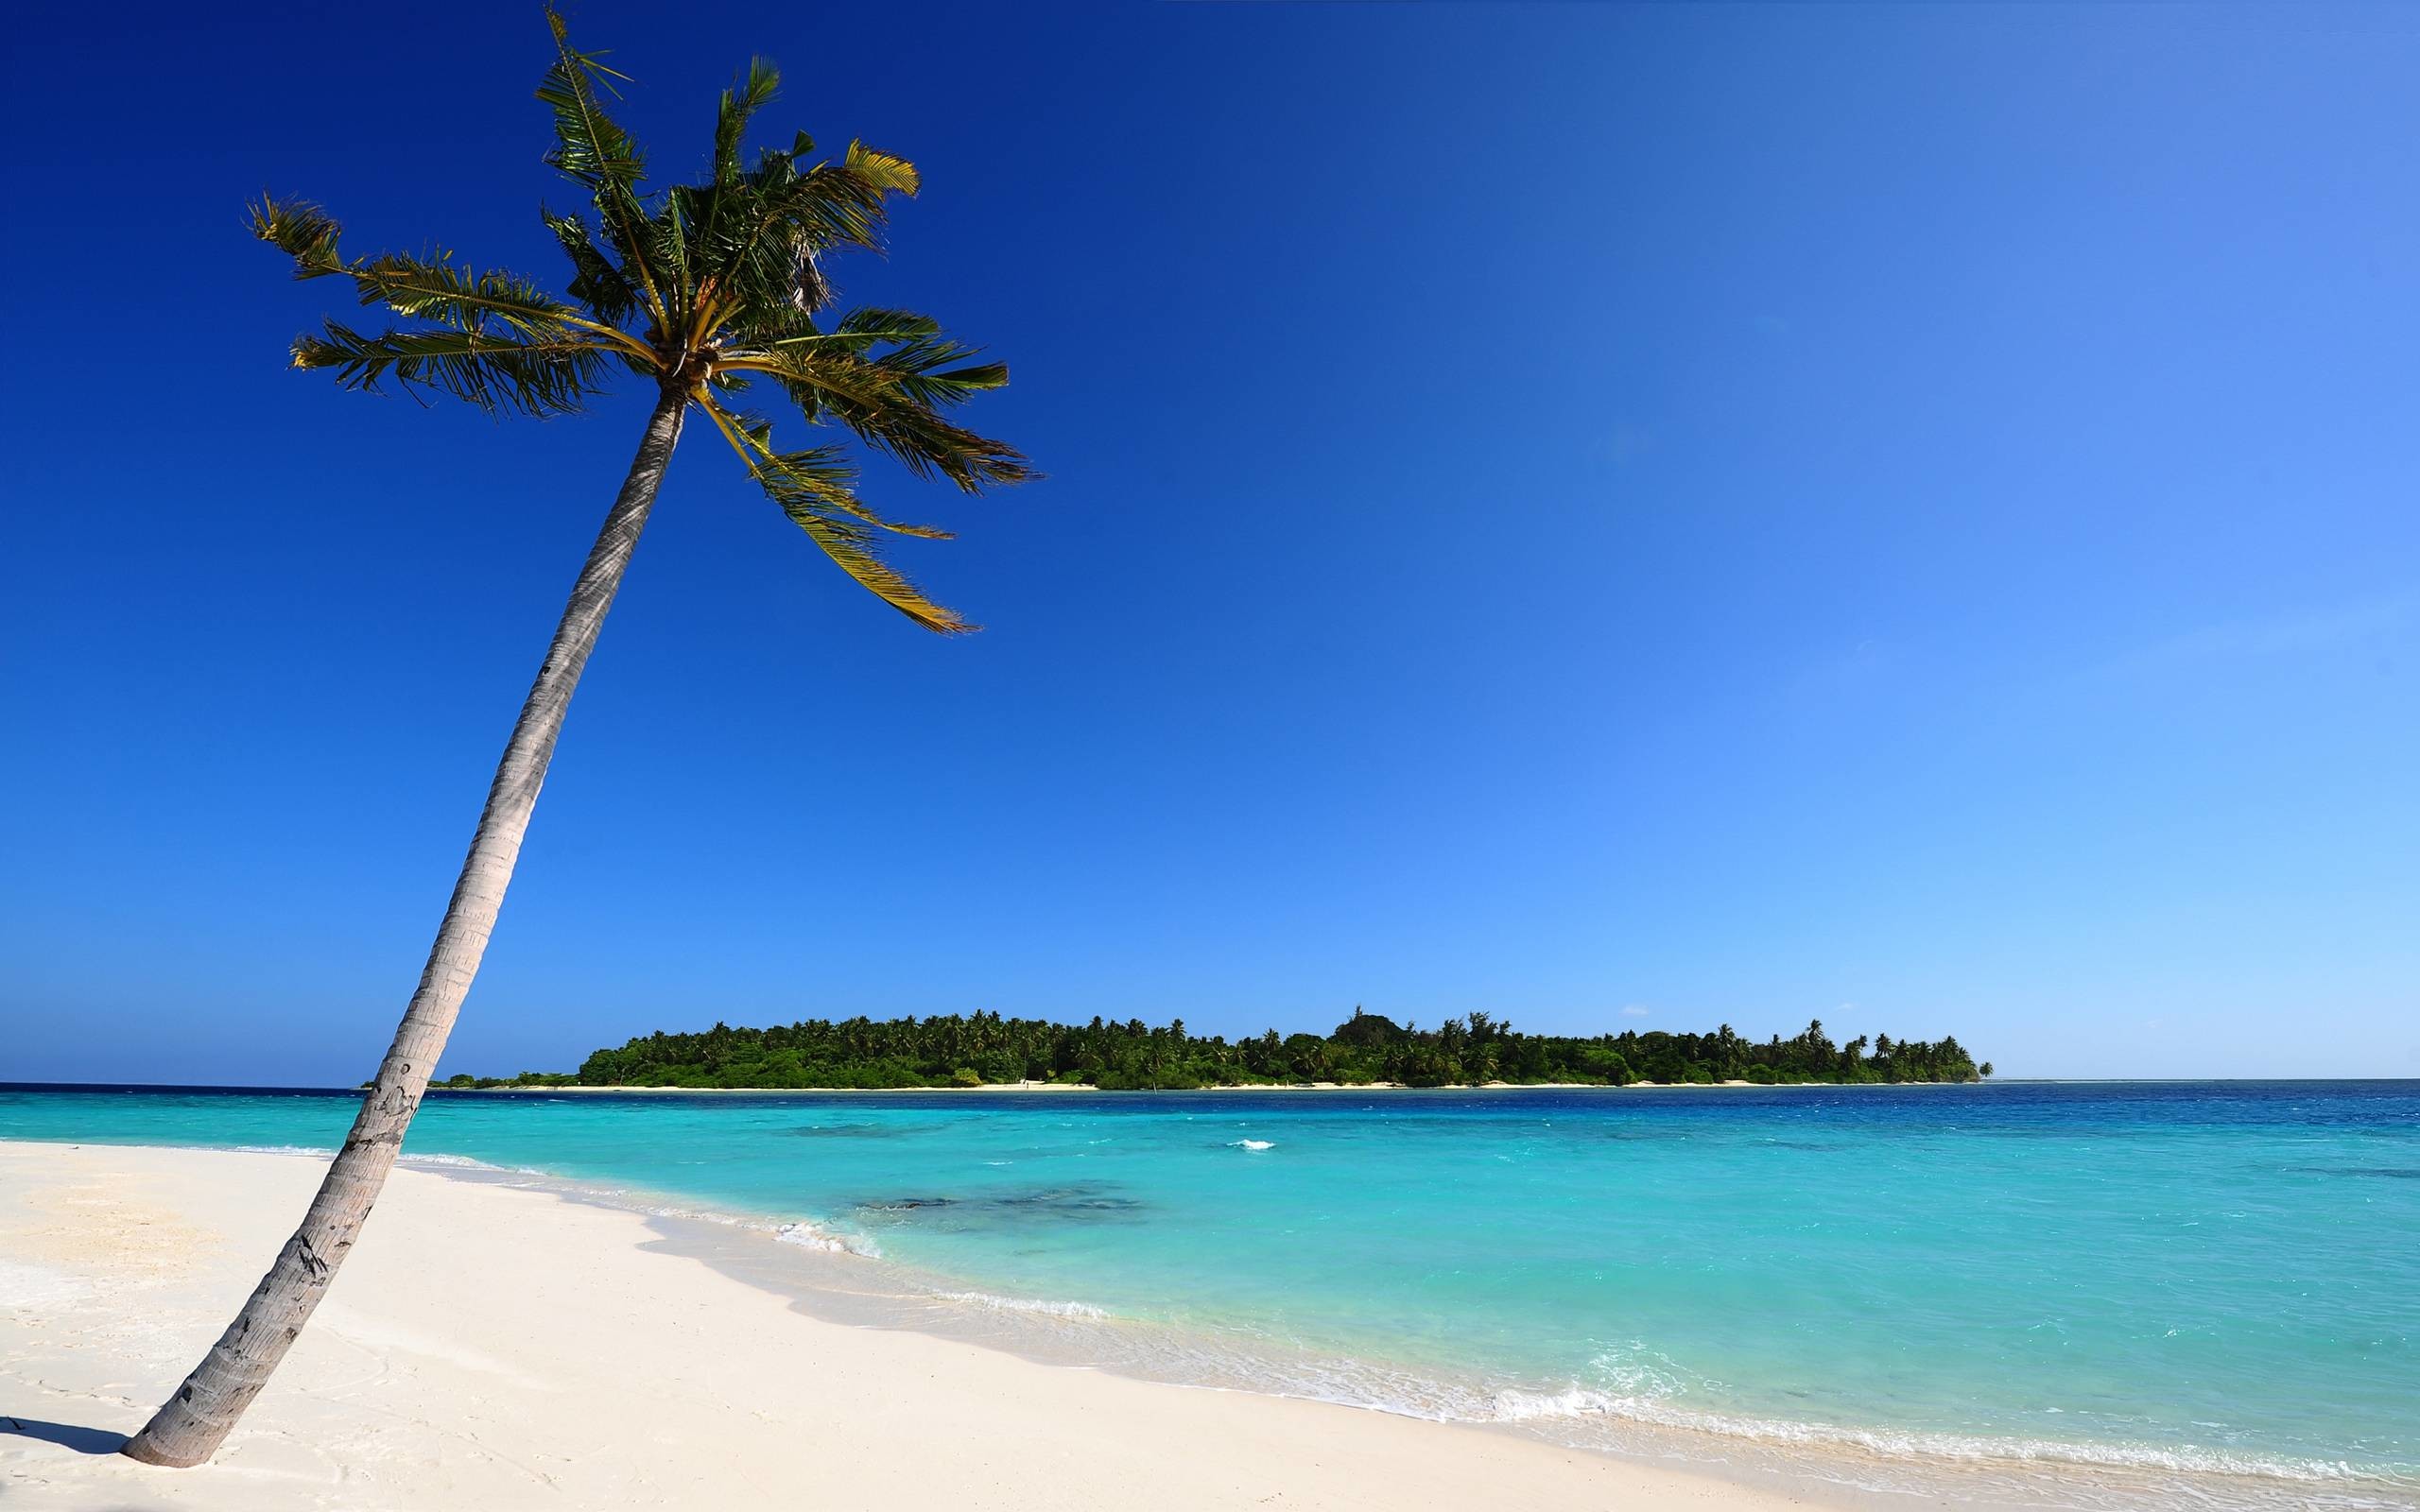 2560x1600 Beaches & Islands HD Wallpapers | Beach Desktop Backgrounds,Stock .